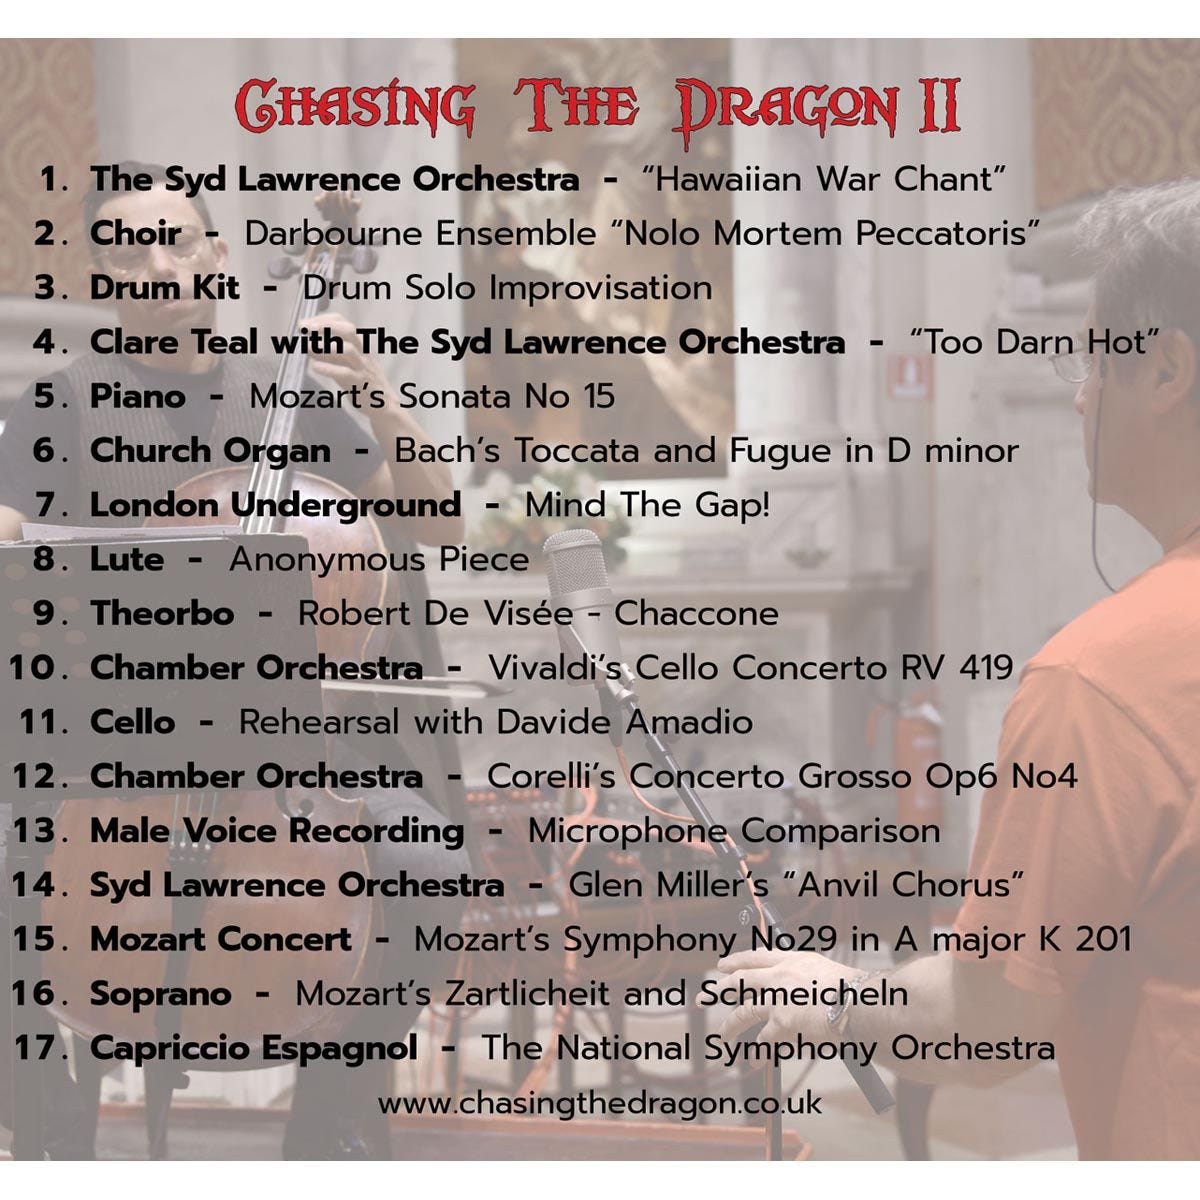 체이싱 더 드래곤 레이블 오디오파일용 데모 및 테스트 2집 (Chasing The Dragon II) 